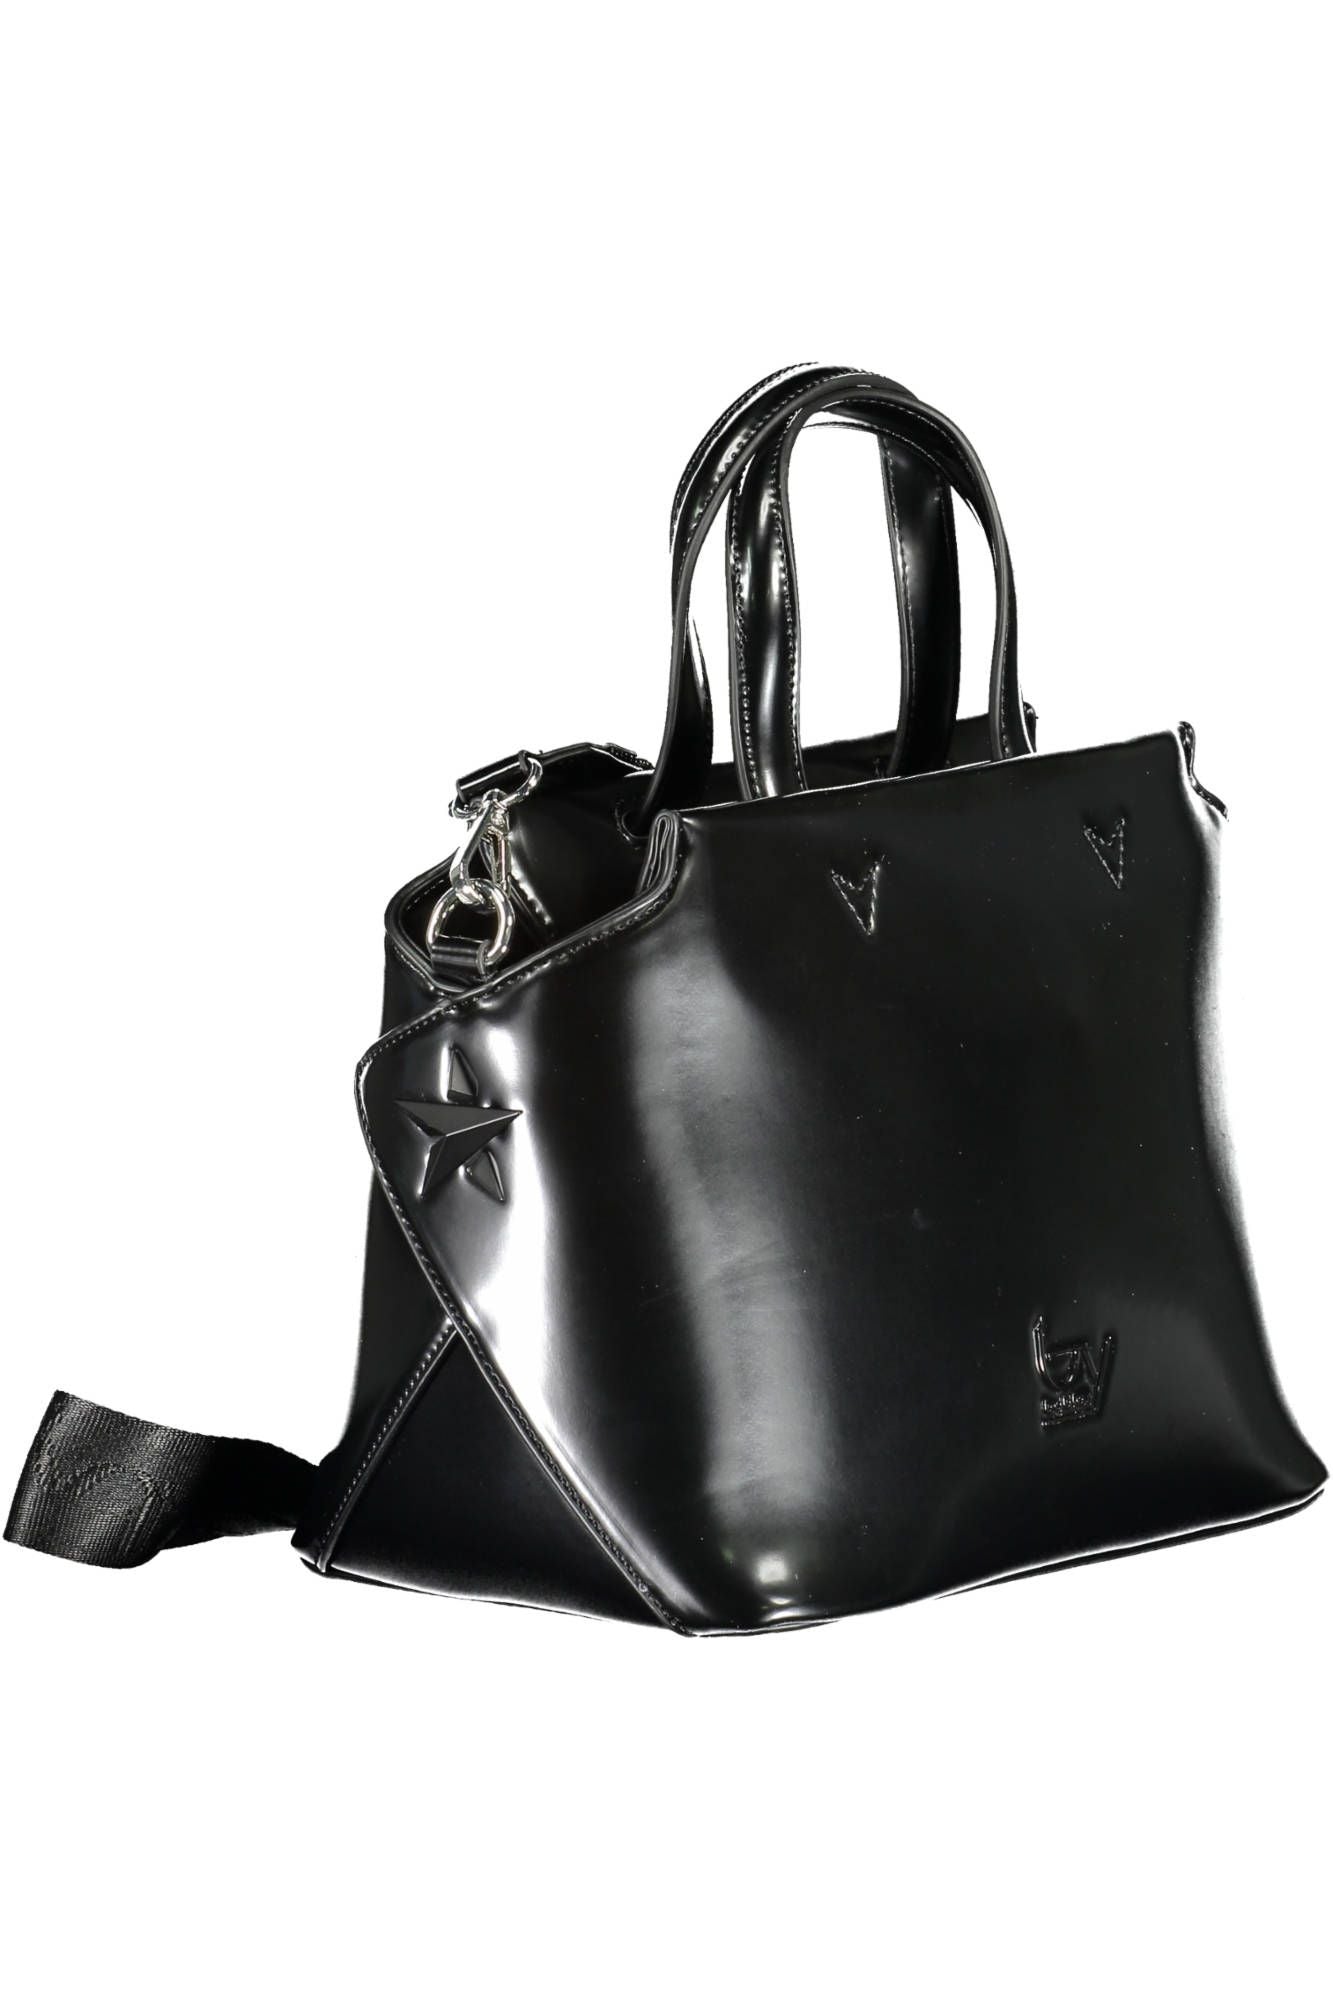 BYBLOS Elegant Black Two-Handle Bag with Contrasting Details | Fashionsarah.com